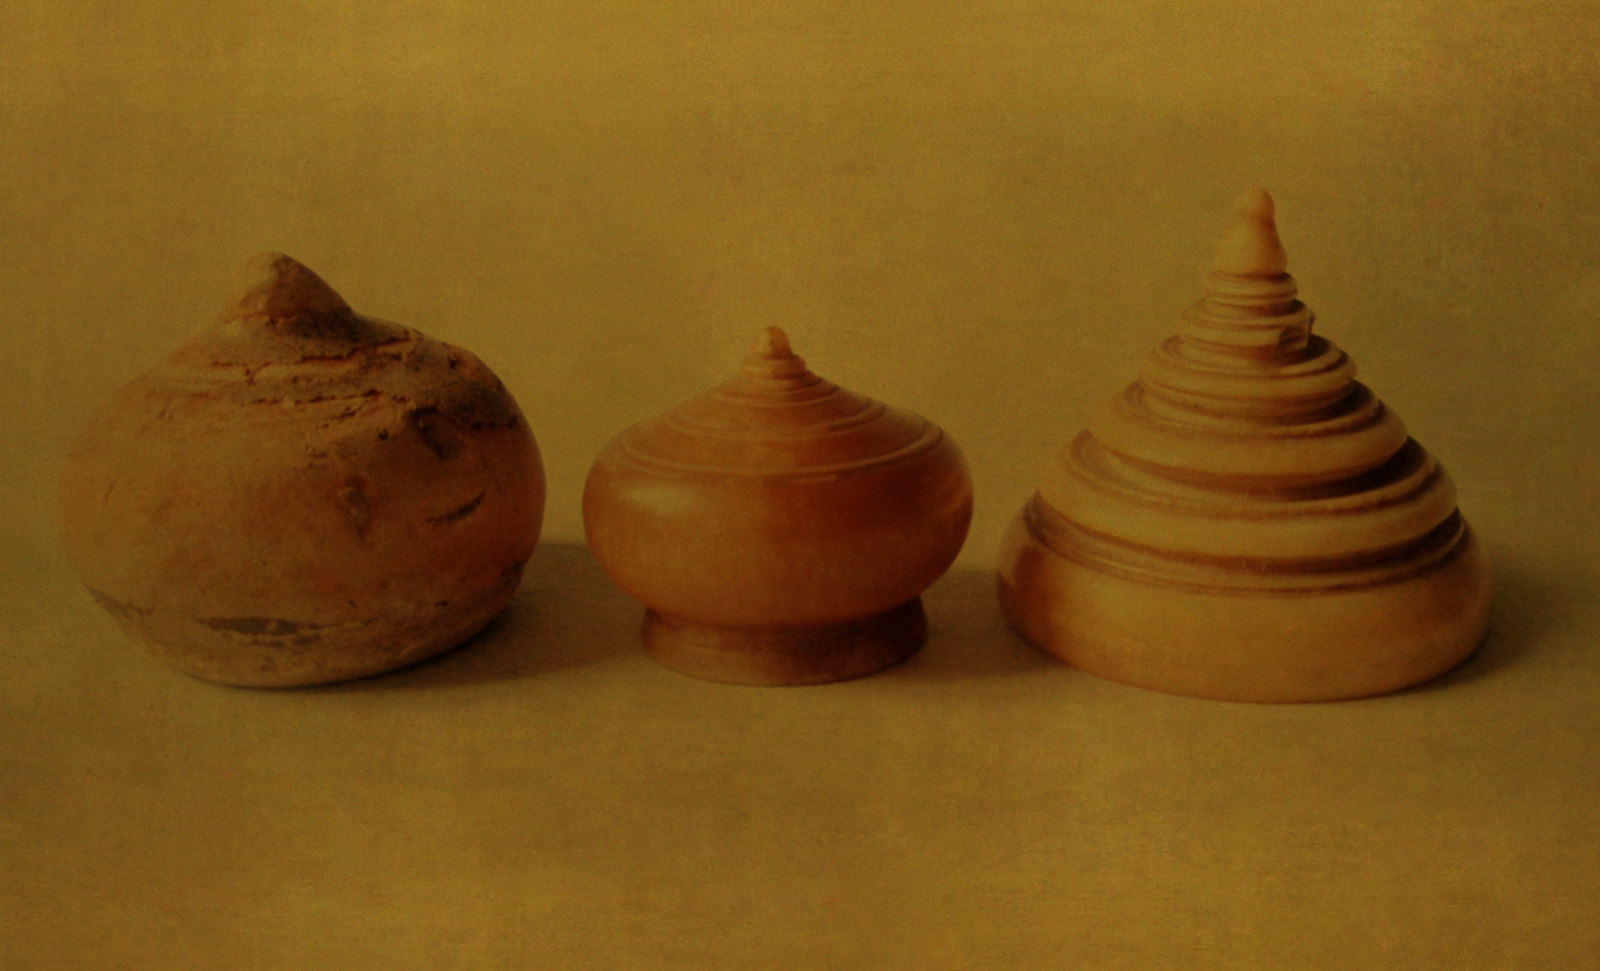 Chaturanga-makruk / Escenarios y artefactos de recreación meditativa en lndia y el sudeste asiático